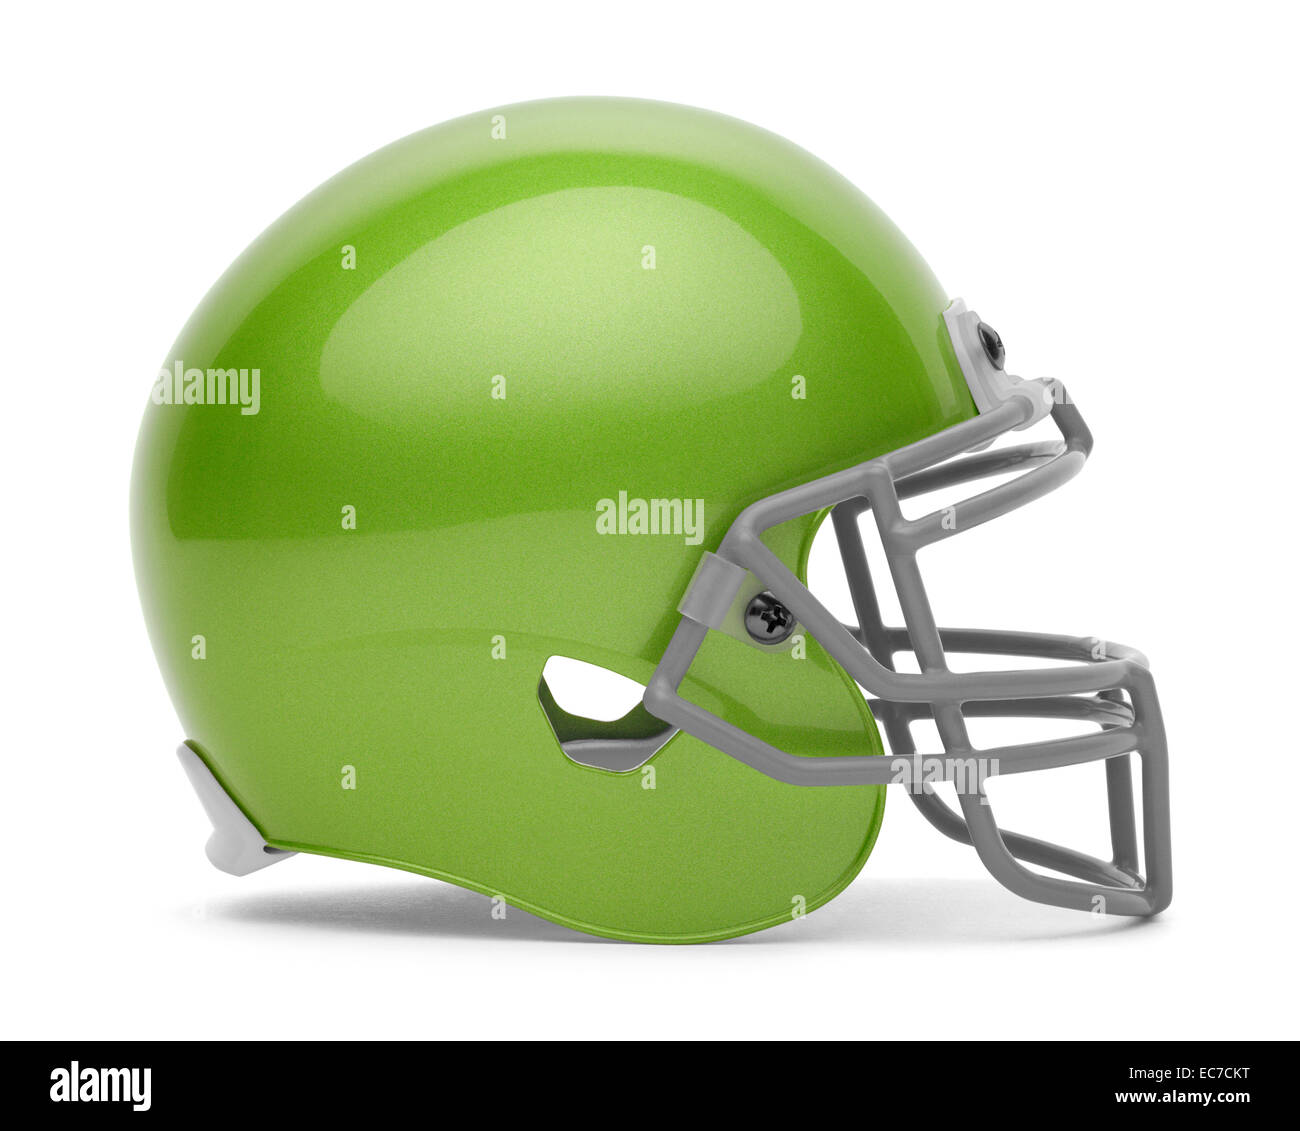 Vue latérale du casque de football vert avec copie espace isolé sur fond blanc. Banque D'Images